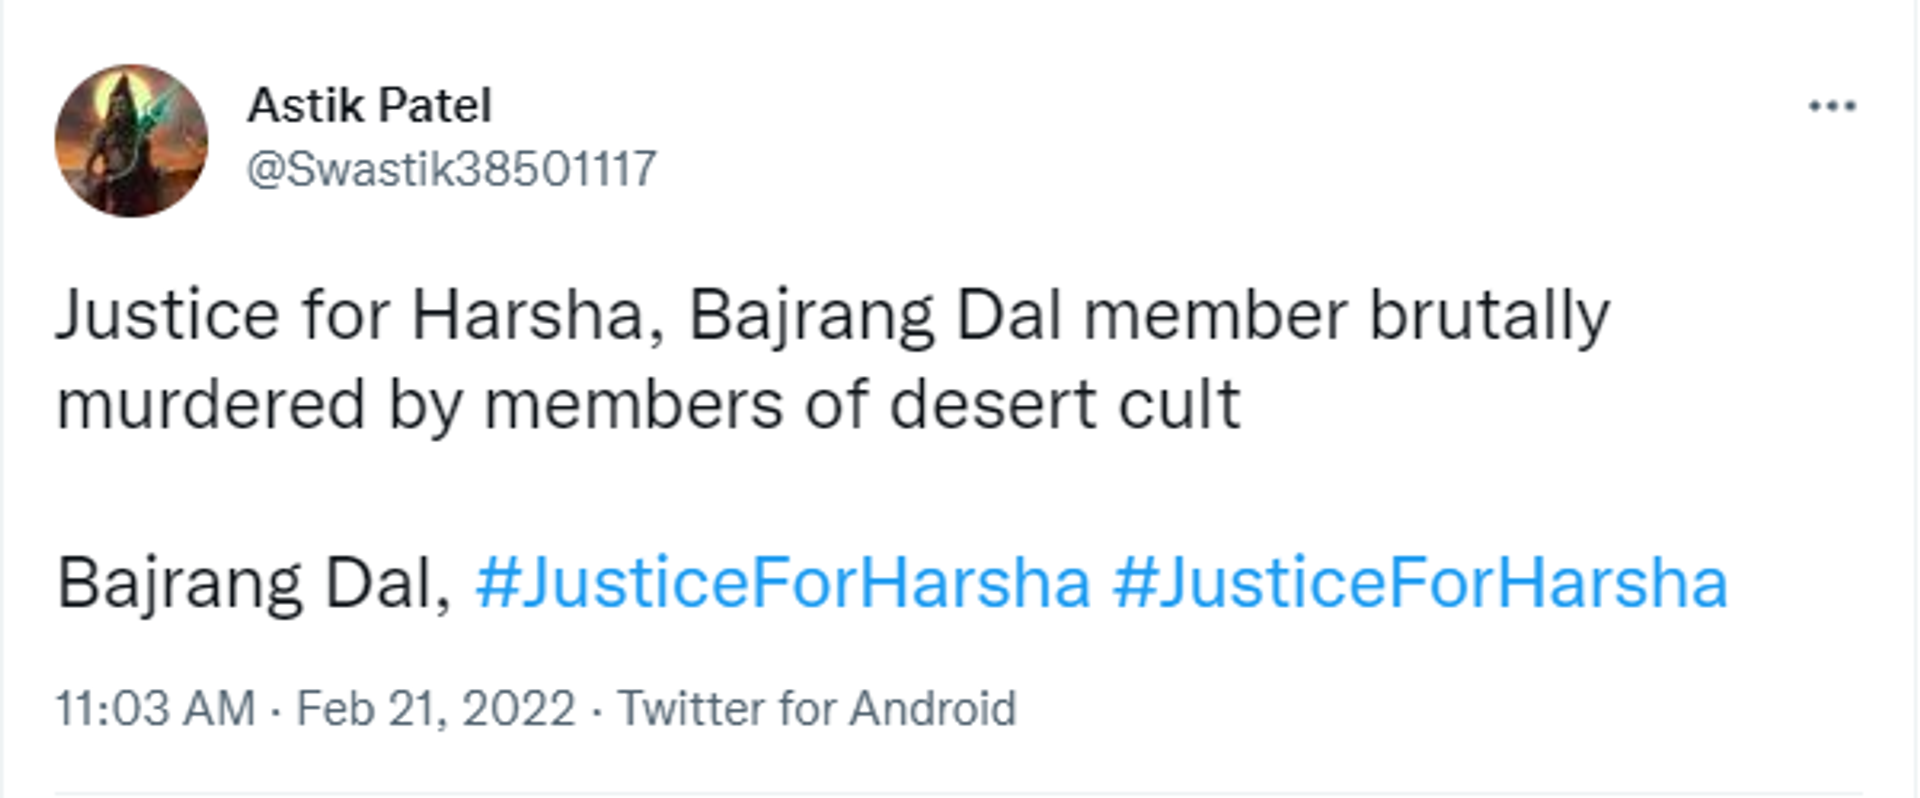 Demand for Justice for Bajrang Dal member Harsha - Sputnik International, 1920, 21.02.2022